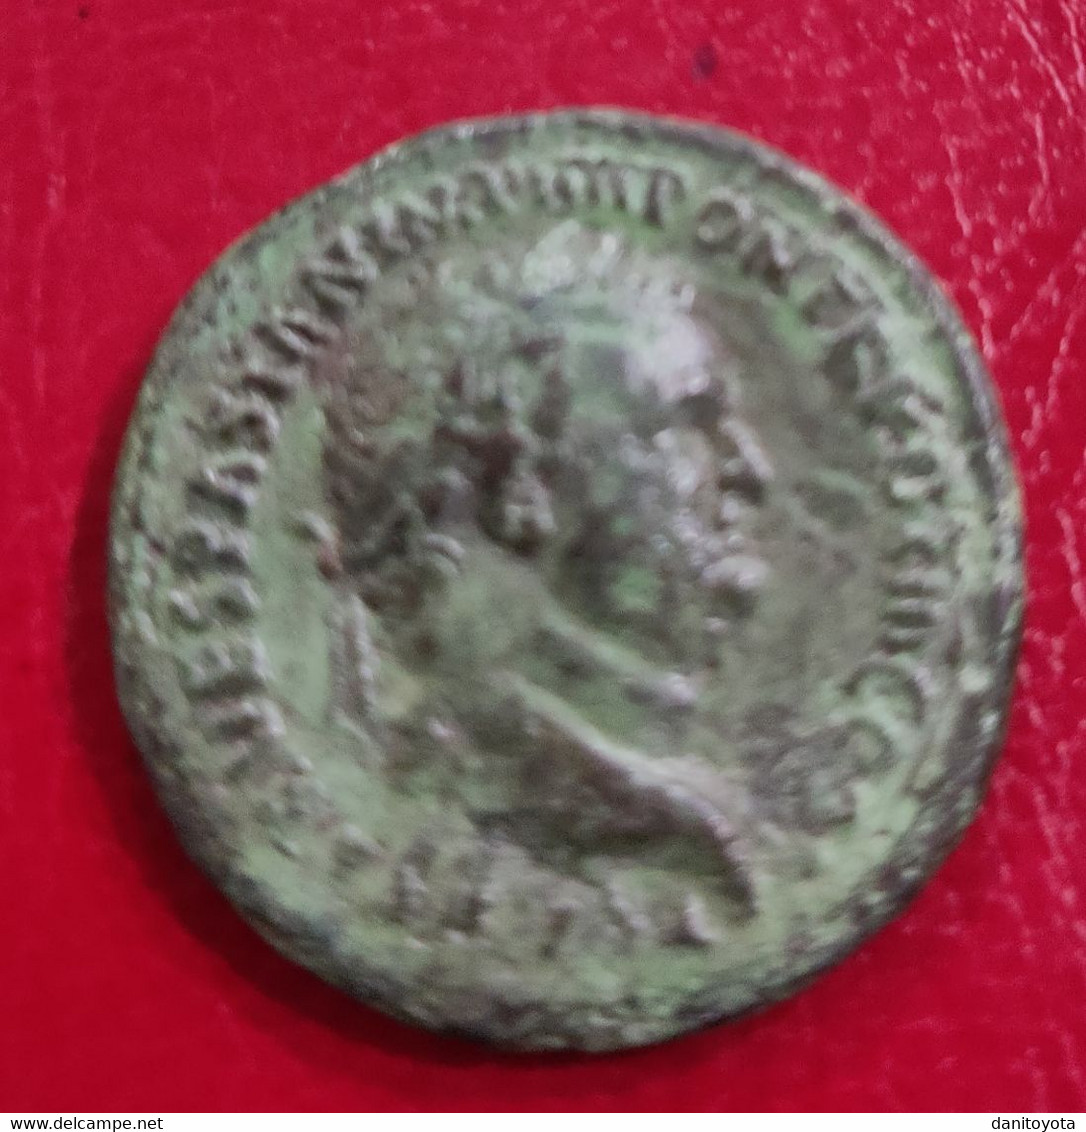 IMPERIO ROMANO. AÑO 72 D.C. DUPONDIO. TITO. PESO 10.7 GR.  REF A/F. - The Flavians (69 AD Tot 96 AD)